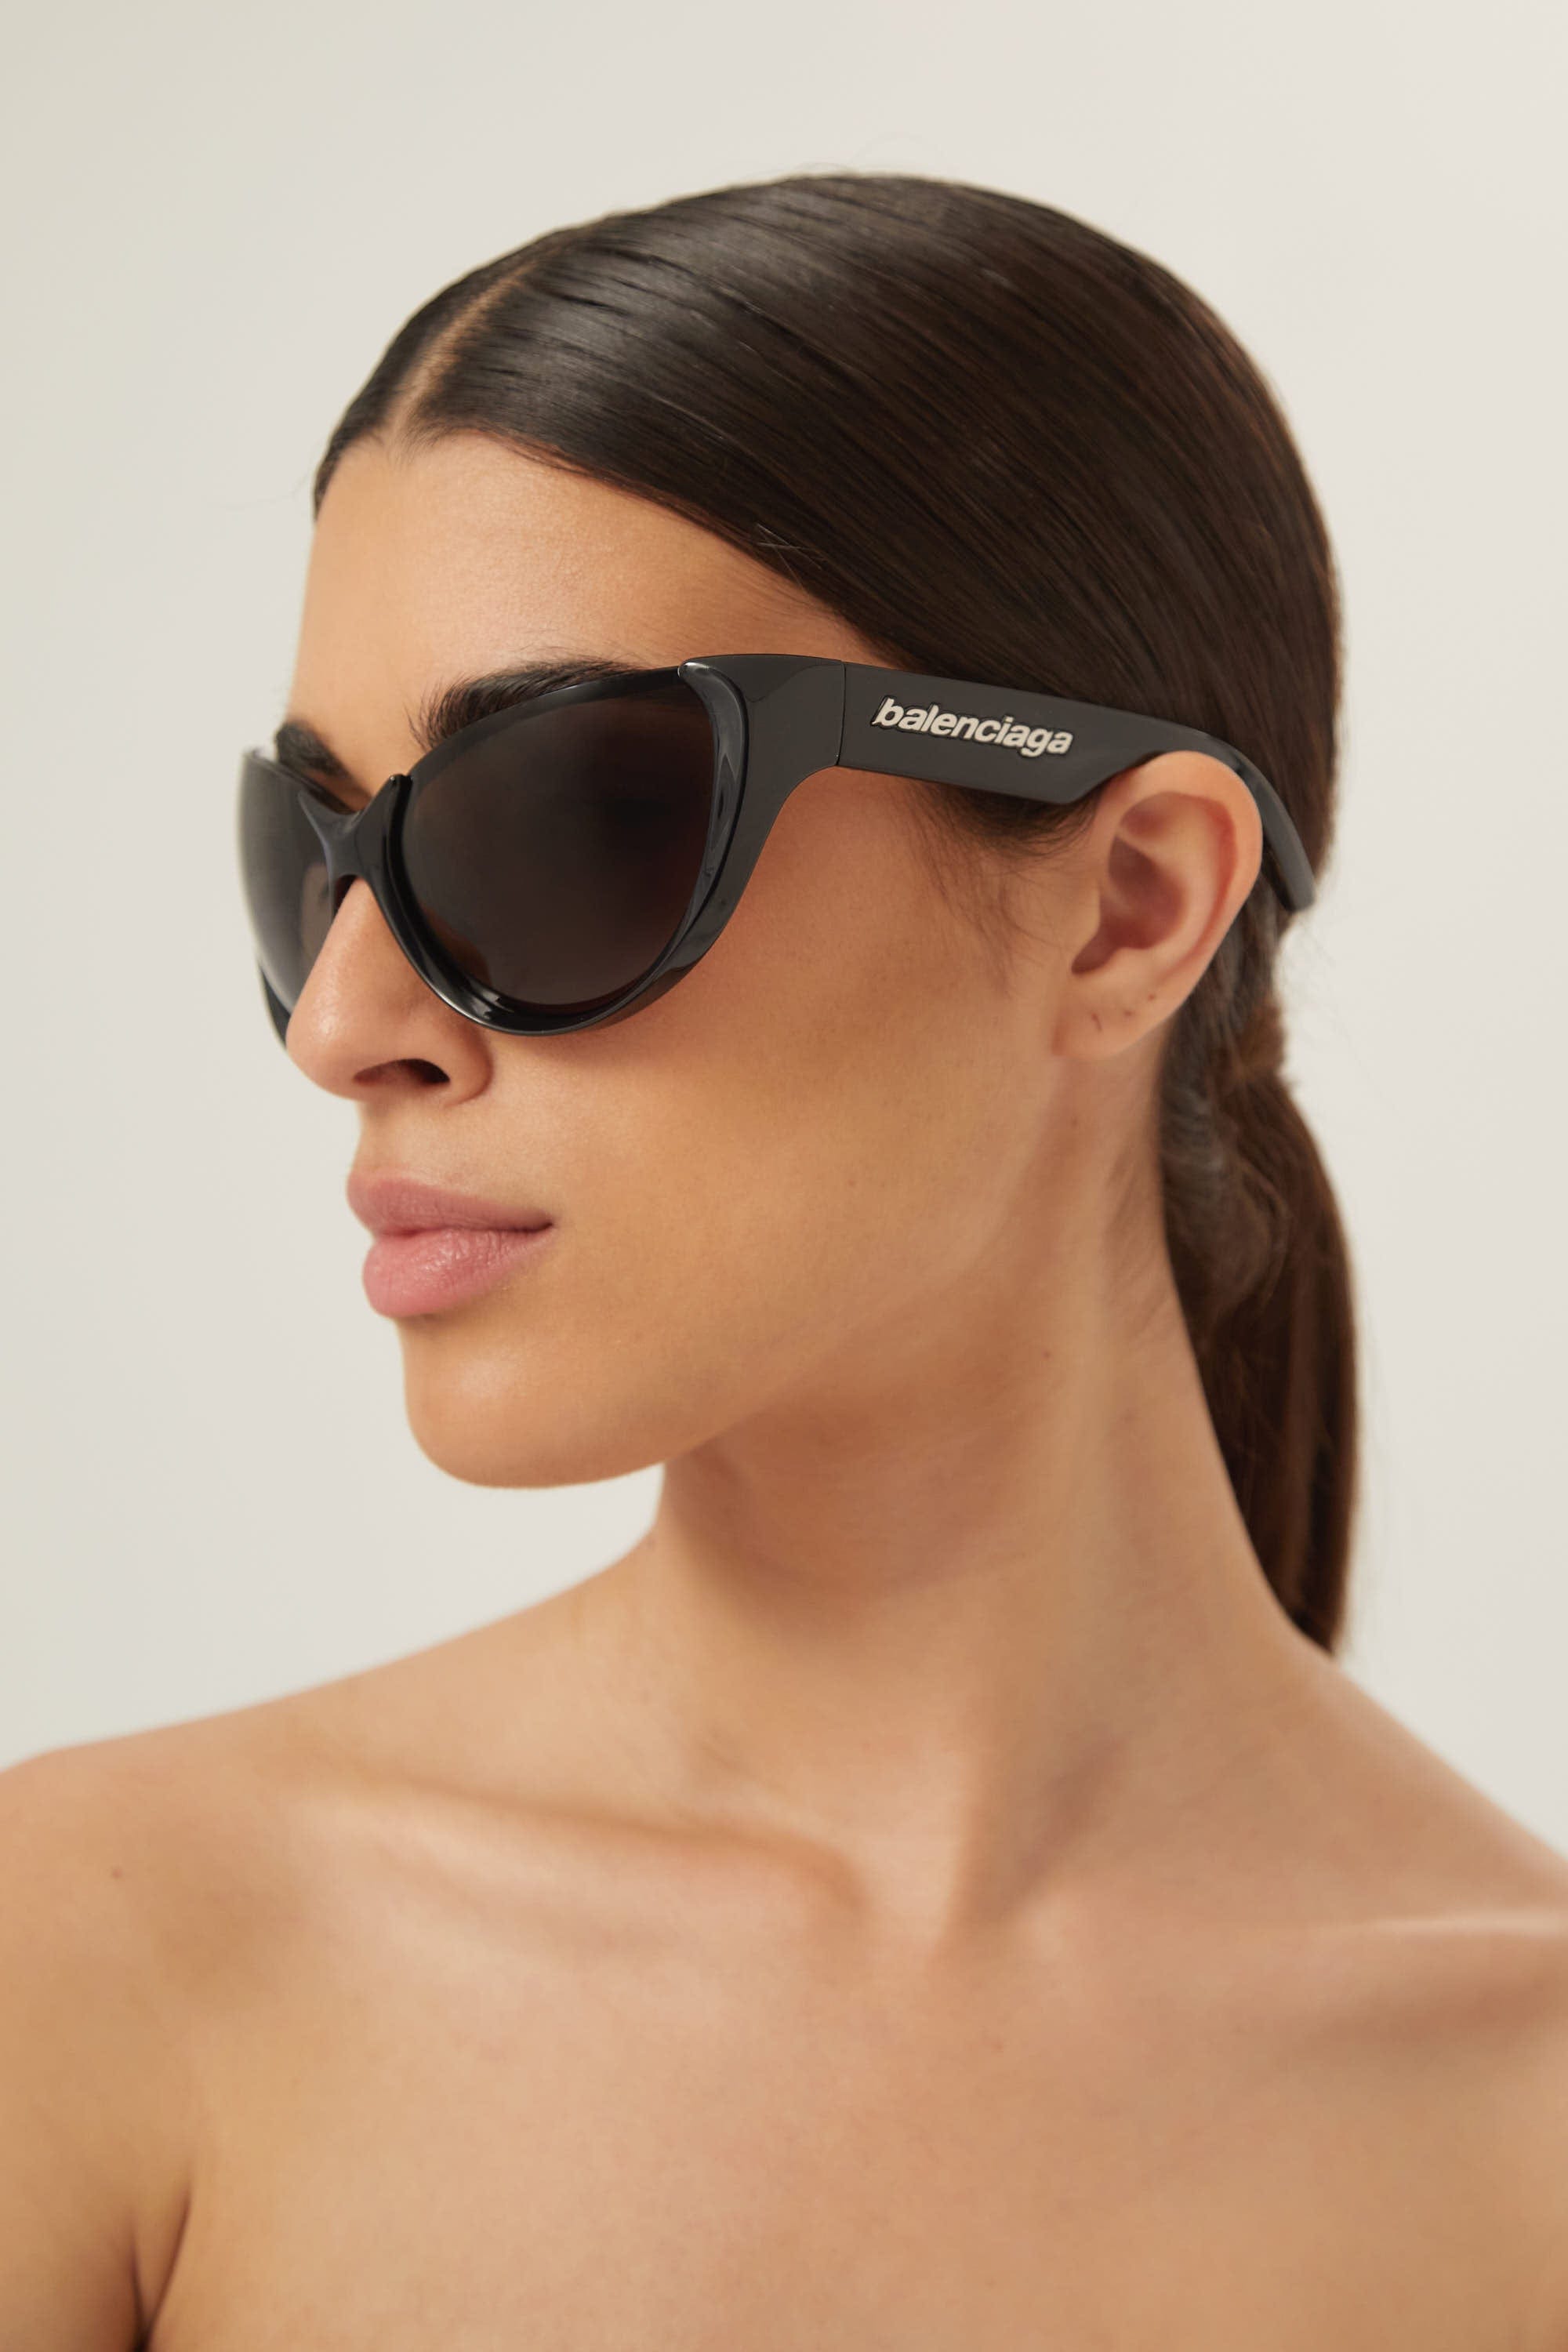 Balenciaga black wrap around sunglasses - Eyewear Club